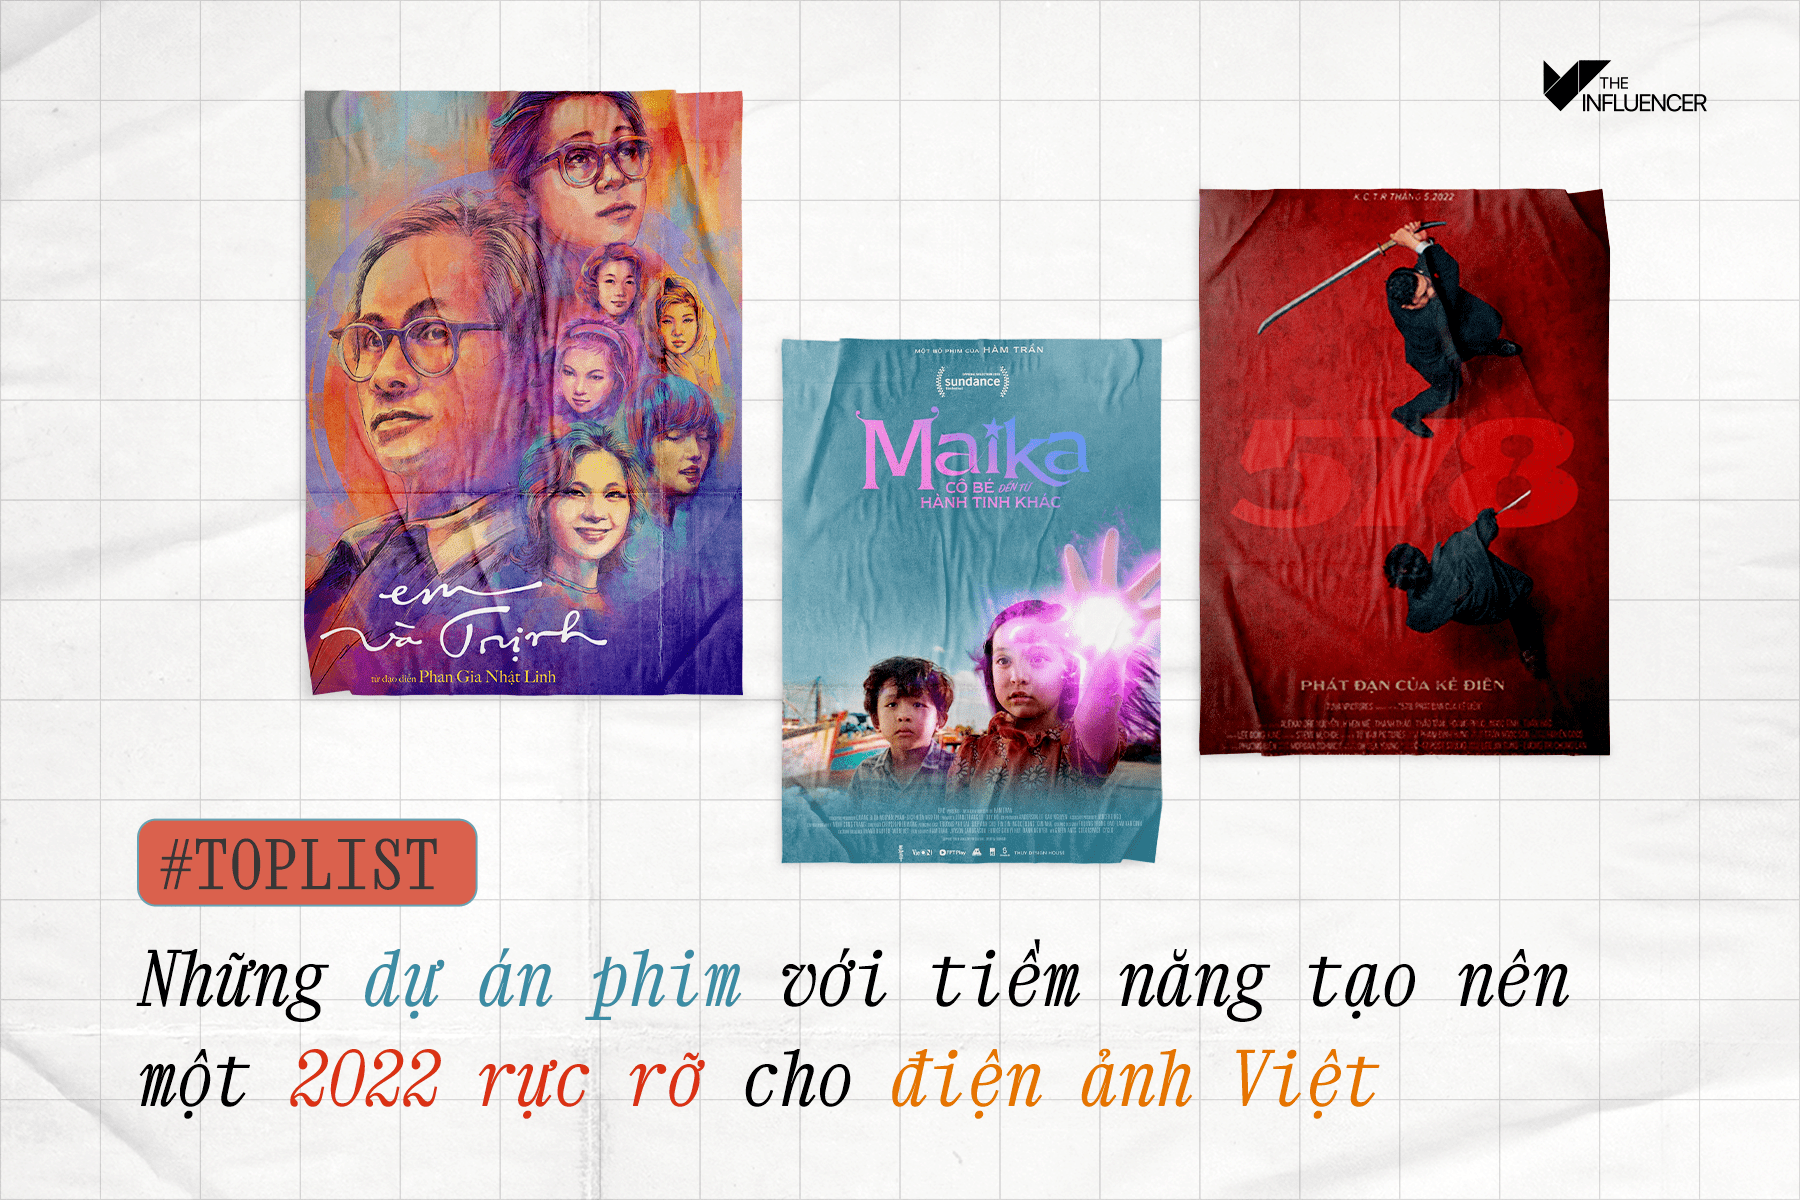 #TopList: Những dự án phim với tiềm năng tạo nên một 2022 rực rỡ cho điện ảnh Việt